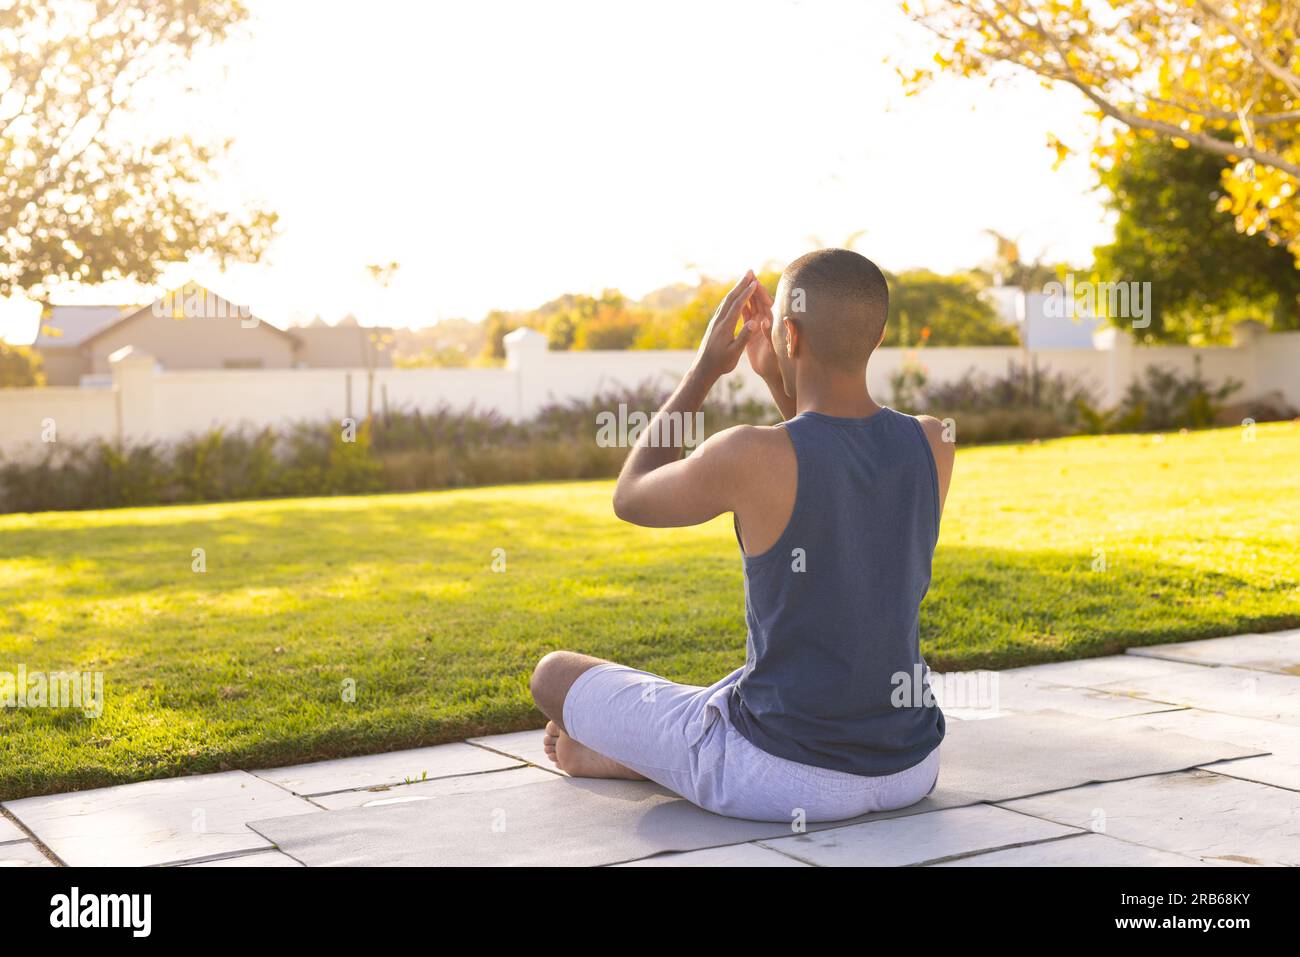 Fokussierter, birassistischer Mann, der Yoga-Meditation praktiziert und im sonnigen Garten sitzt. Sommer, Wohlbefinden, Fitness und gesunder Lebensstil, unverändert. Stockfoto